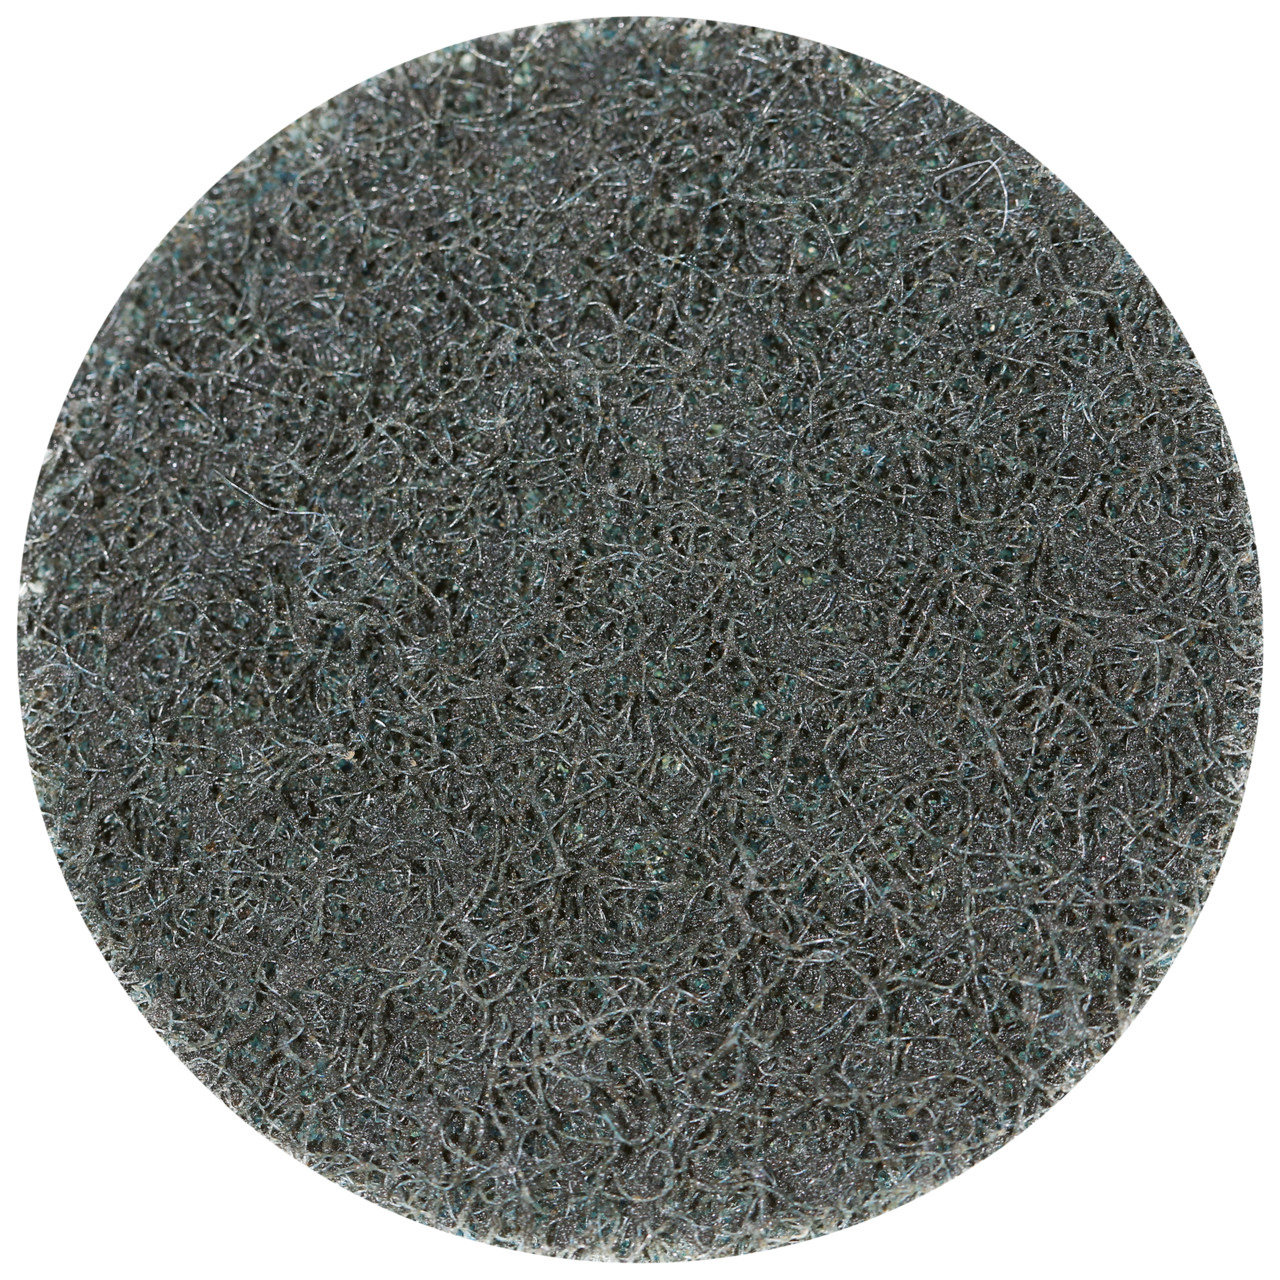 Tyrolit SCM QUICK CHANGE DISC Dimensione 50xR Per acciaio, acciaio inox, metalli non ferrosi, plastica e legno, EXTRA MEDIUM, forma: QDISC, Art. 34072696